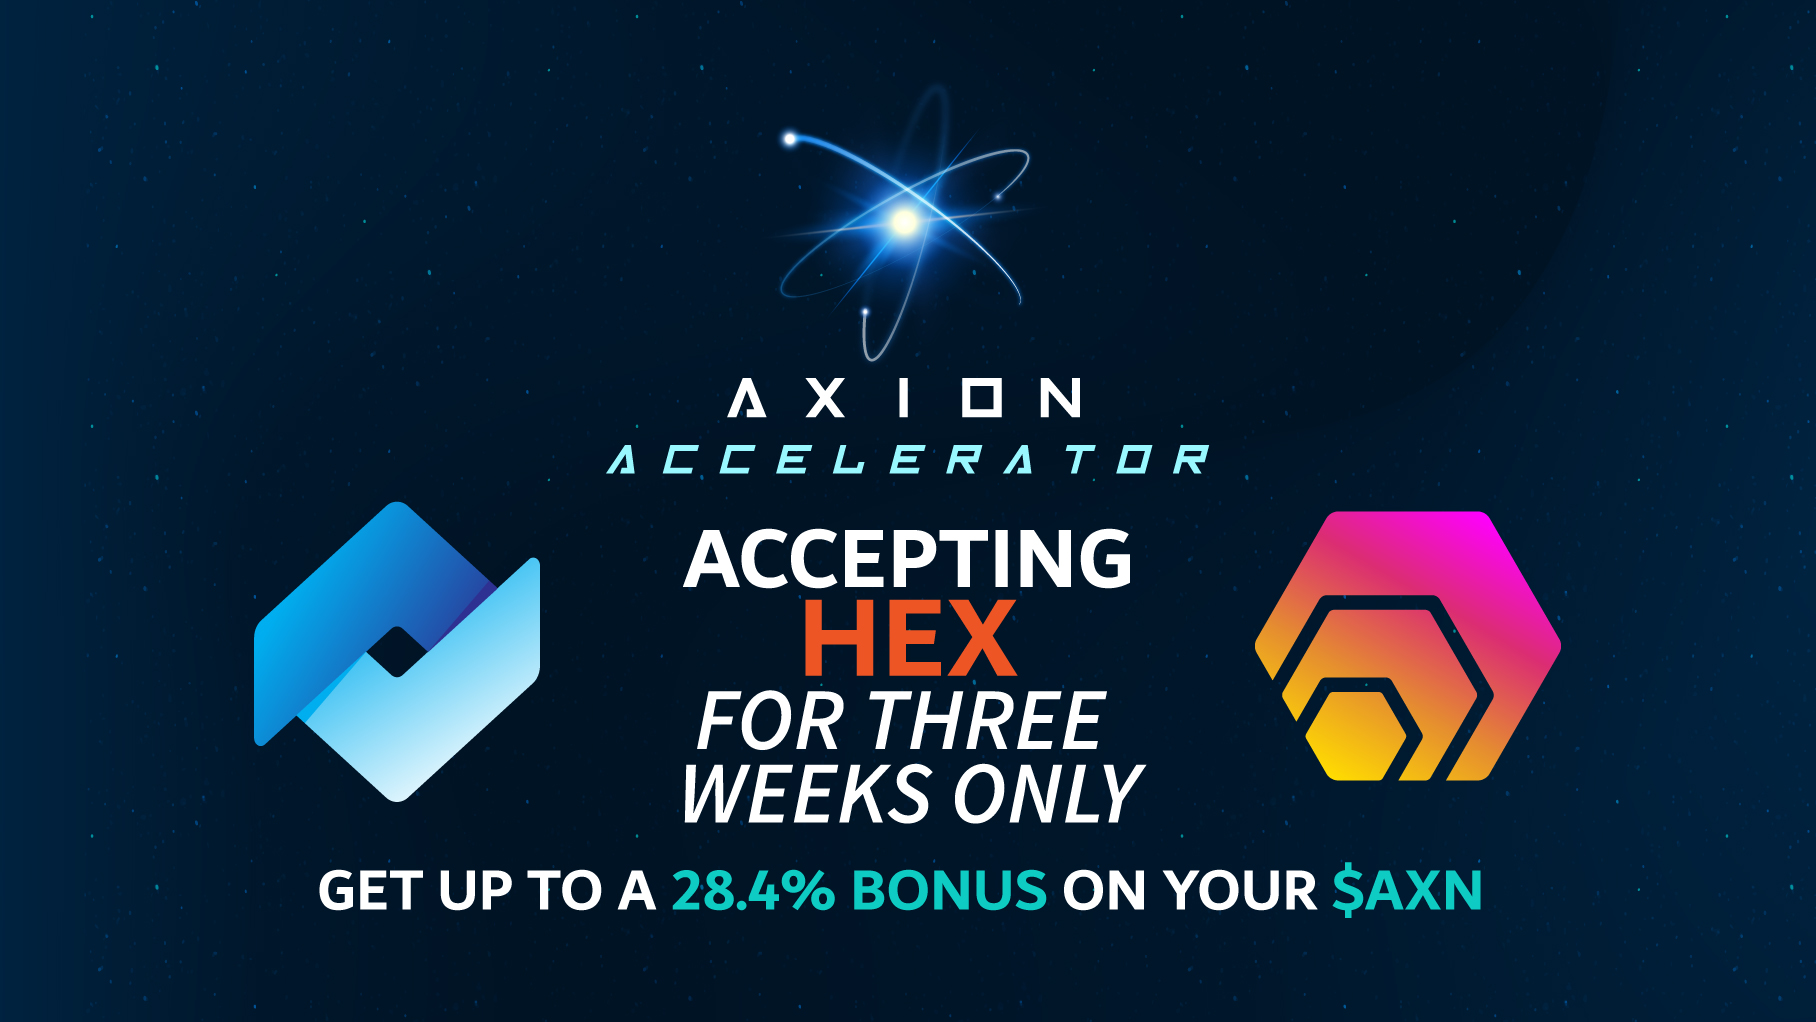 Axion Advisory Council logo